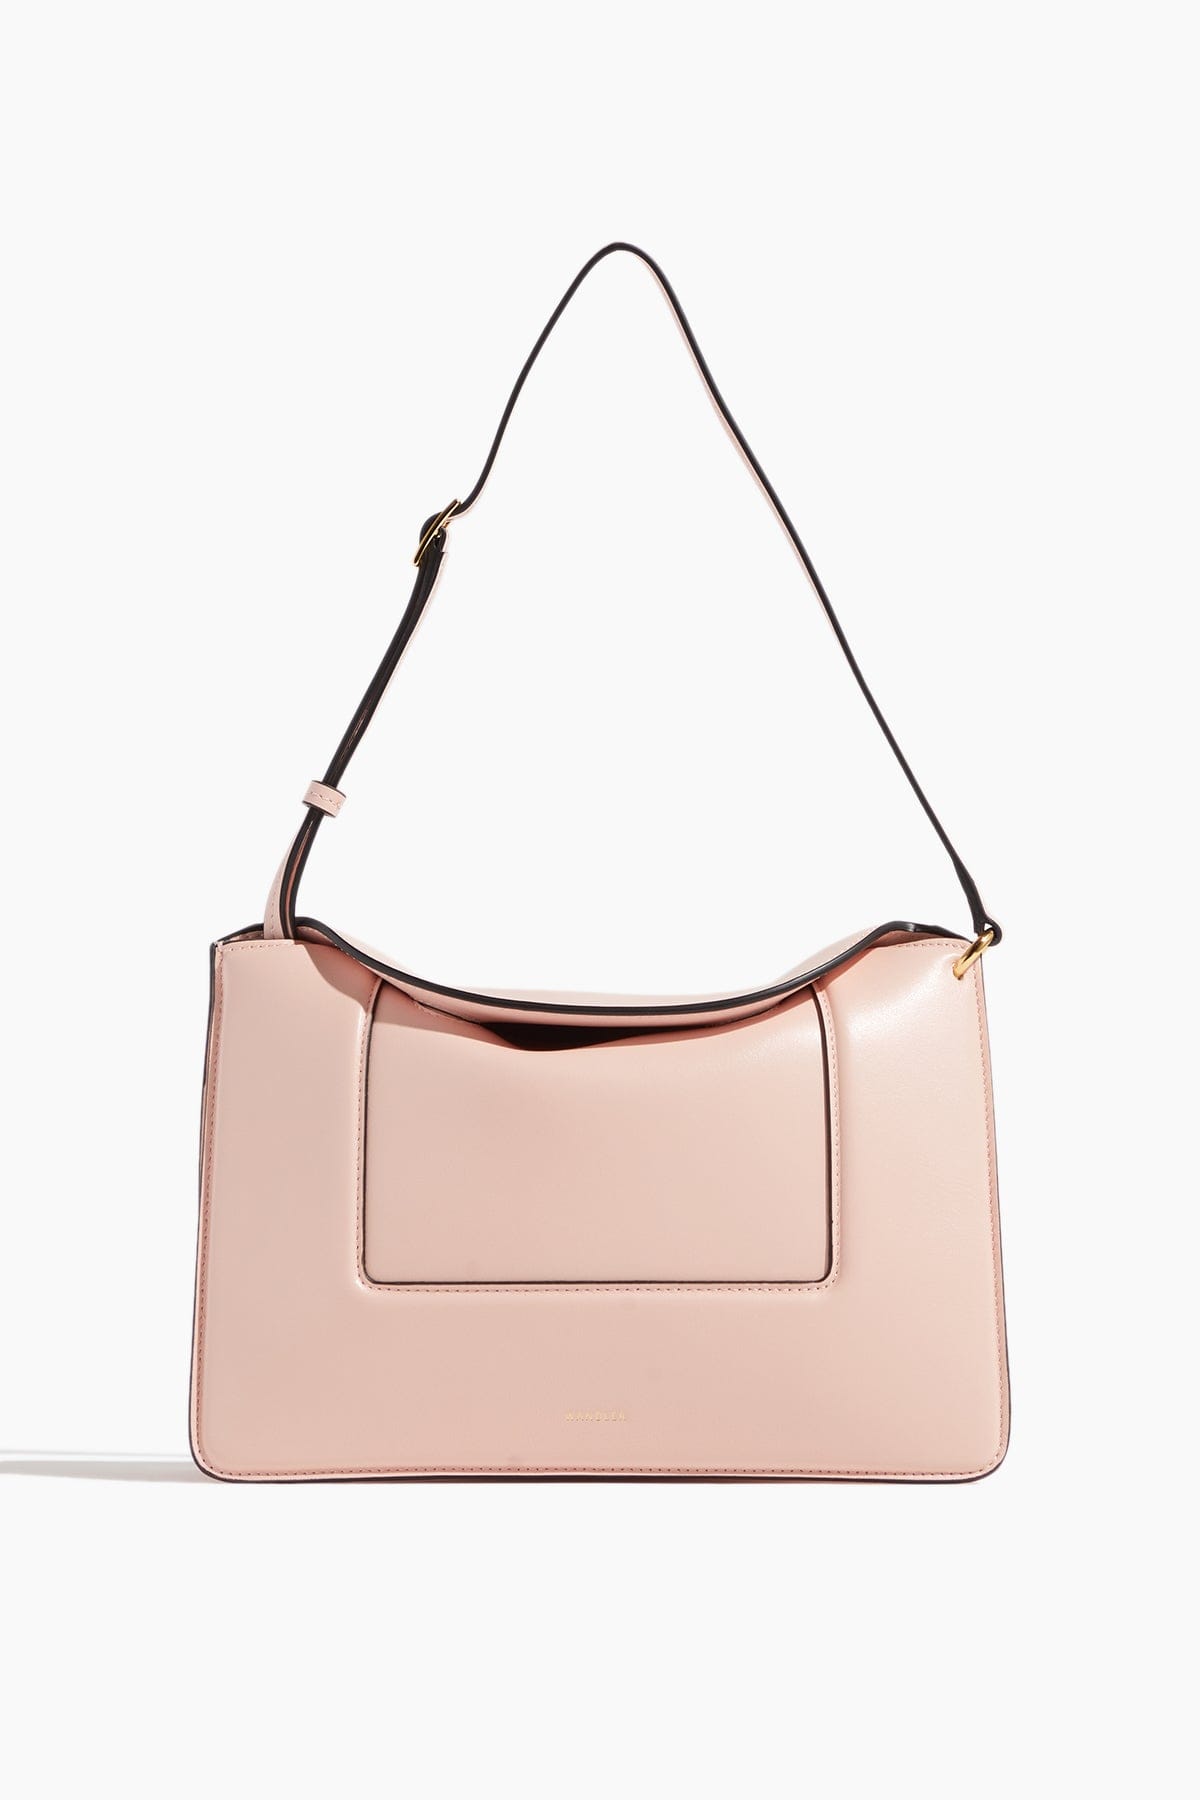 Wandler Mini Bags Penelope Bag in Rose Petal